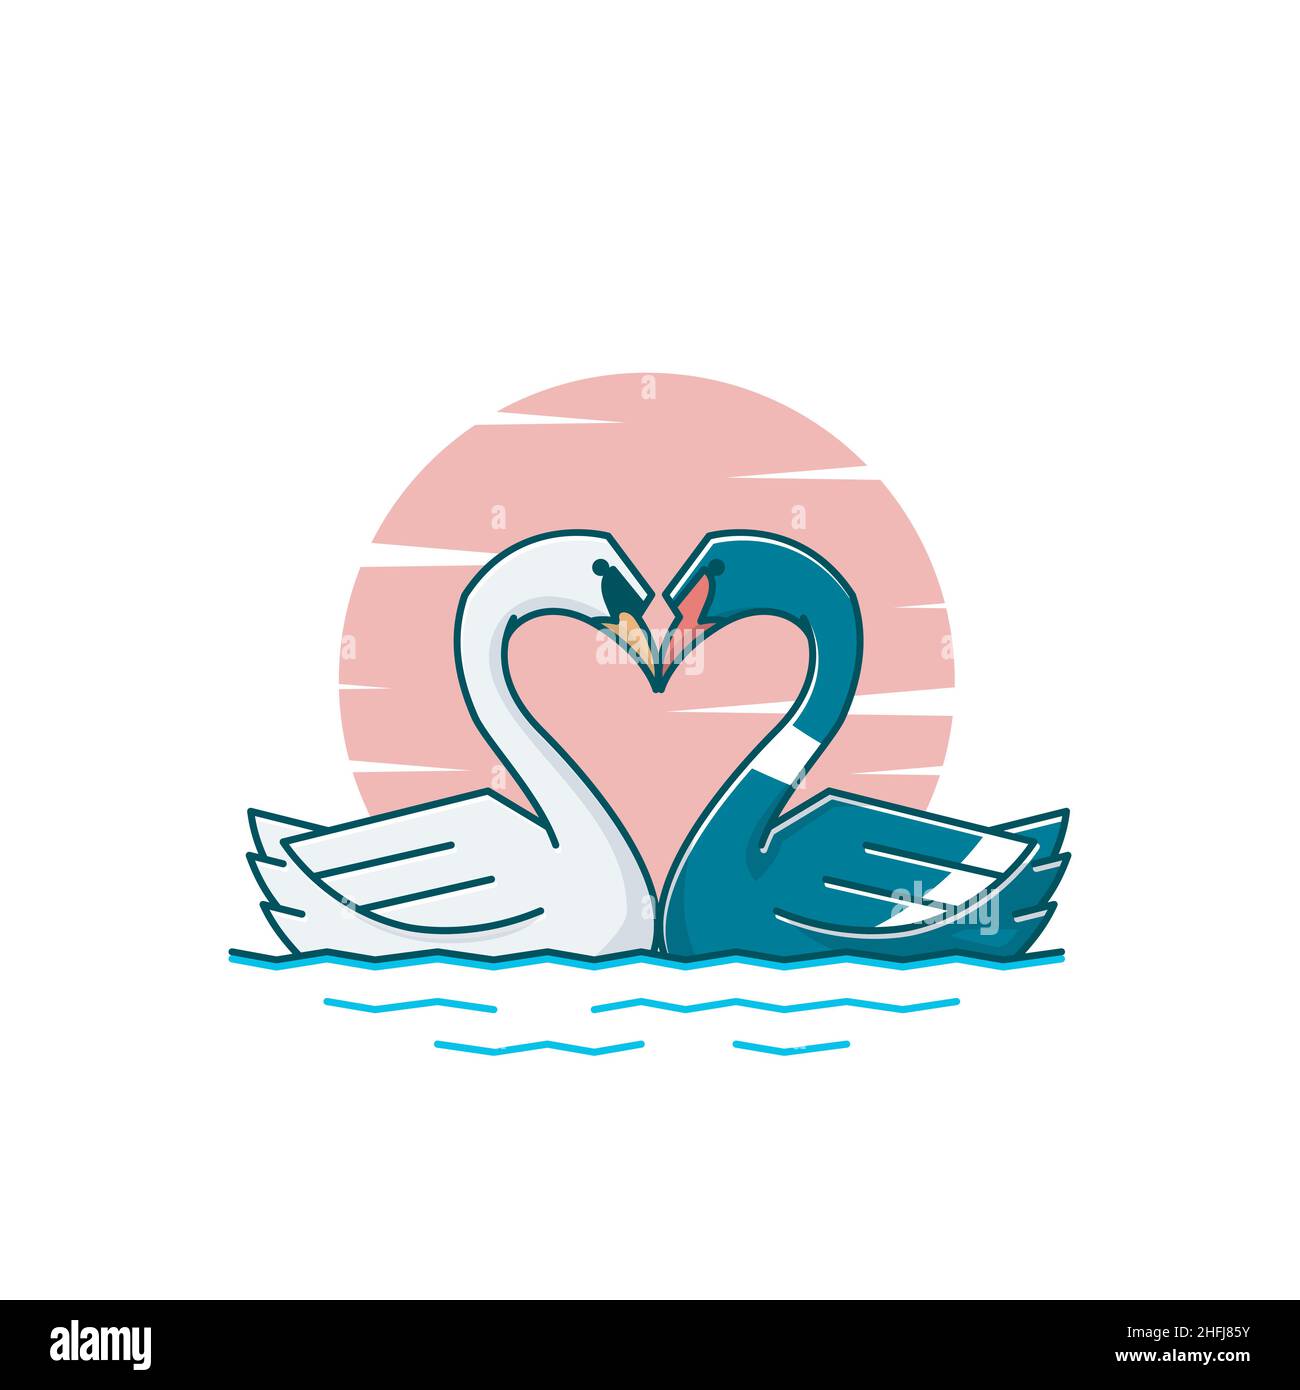 Love Heart Swan Goose couple Duck Swimming Vector Cartoon Illustration de Vecteur